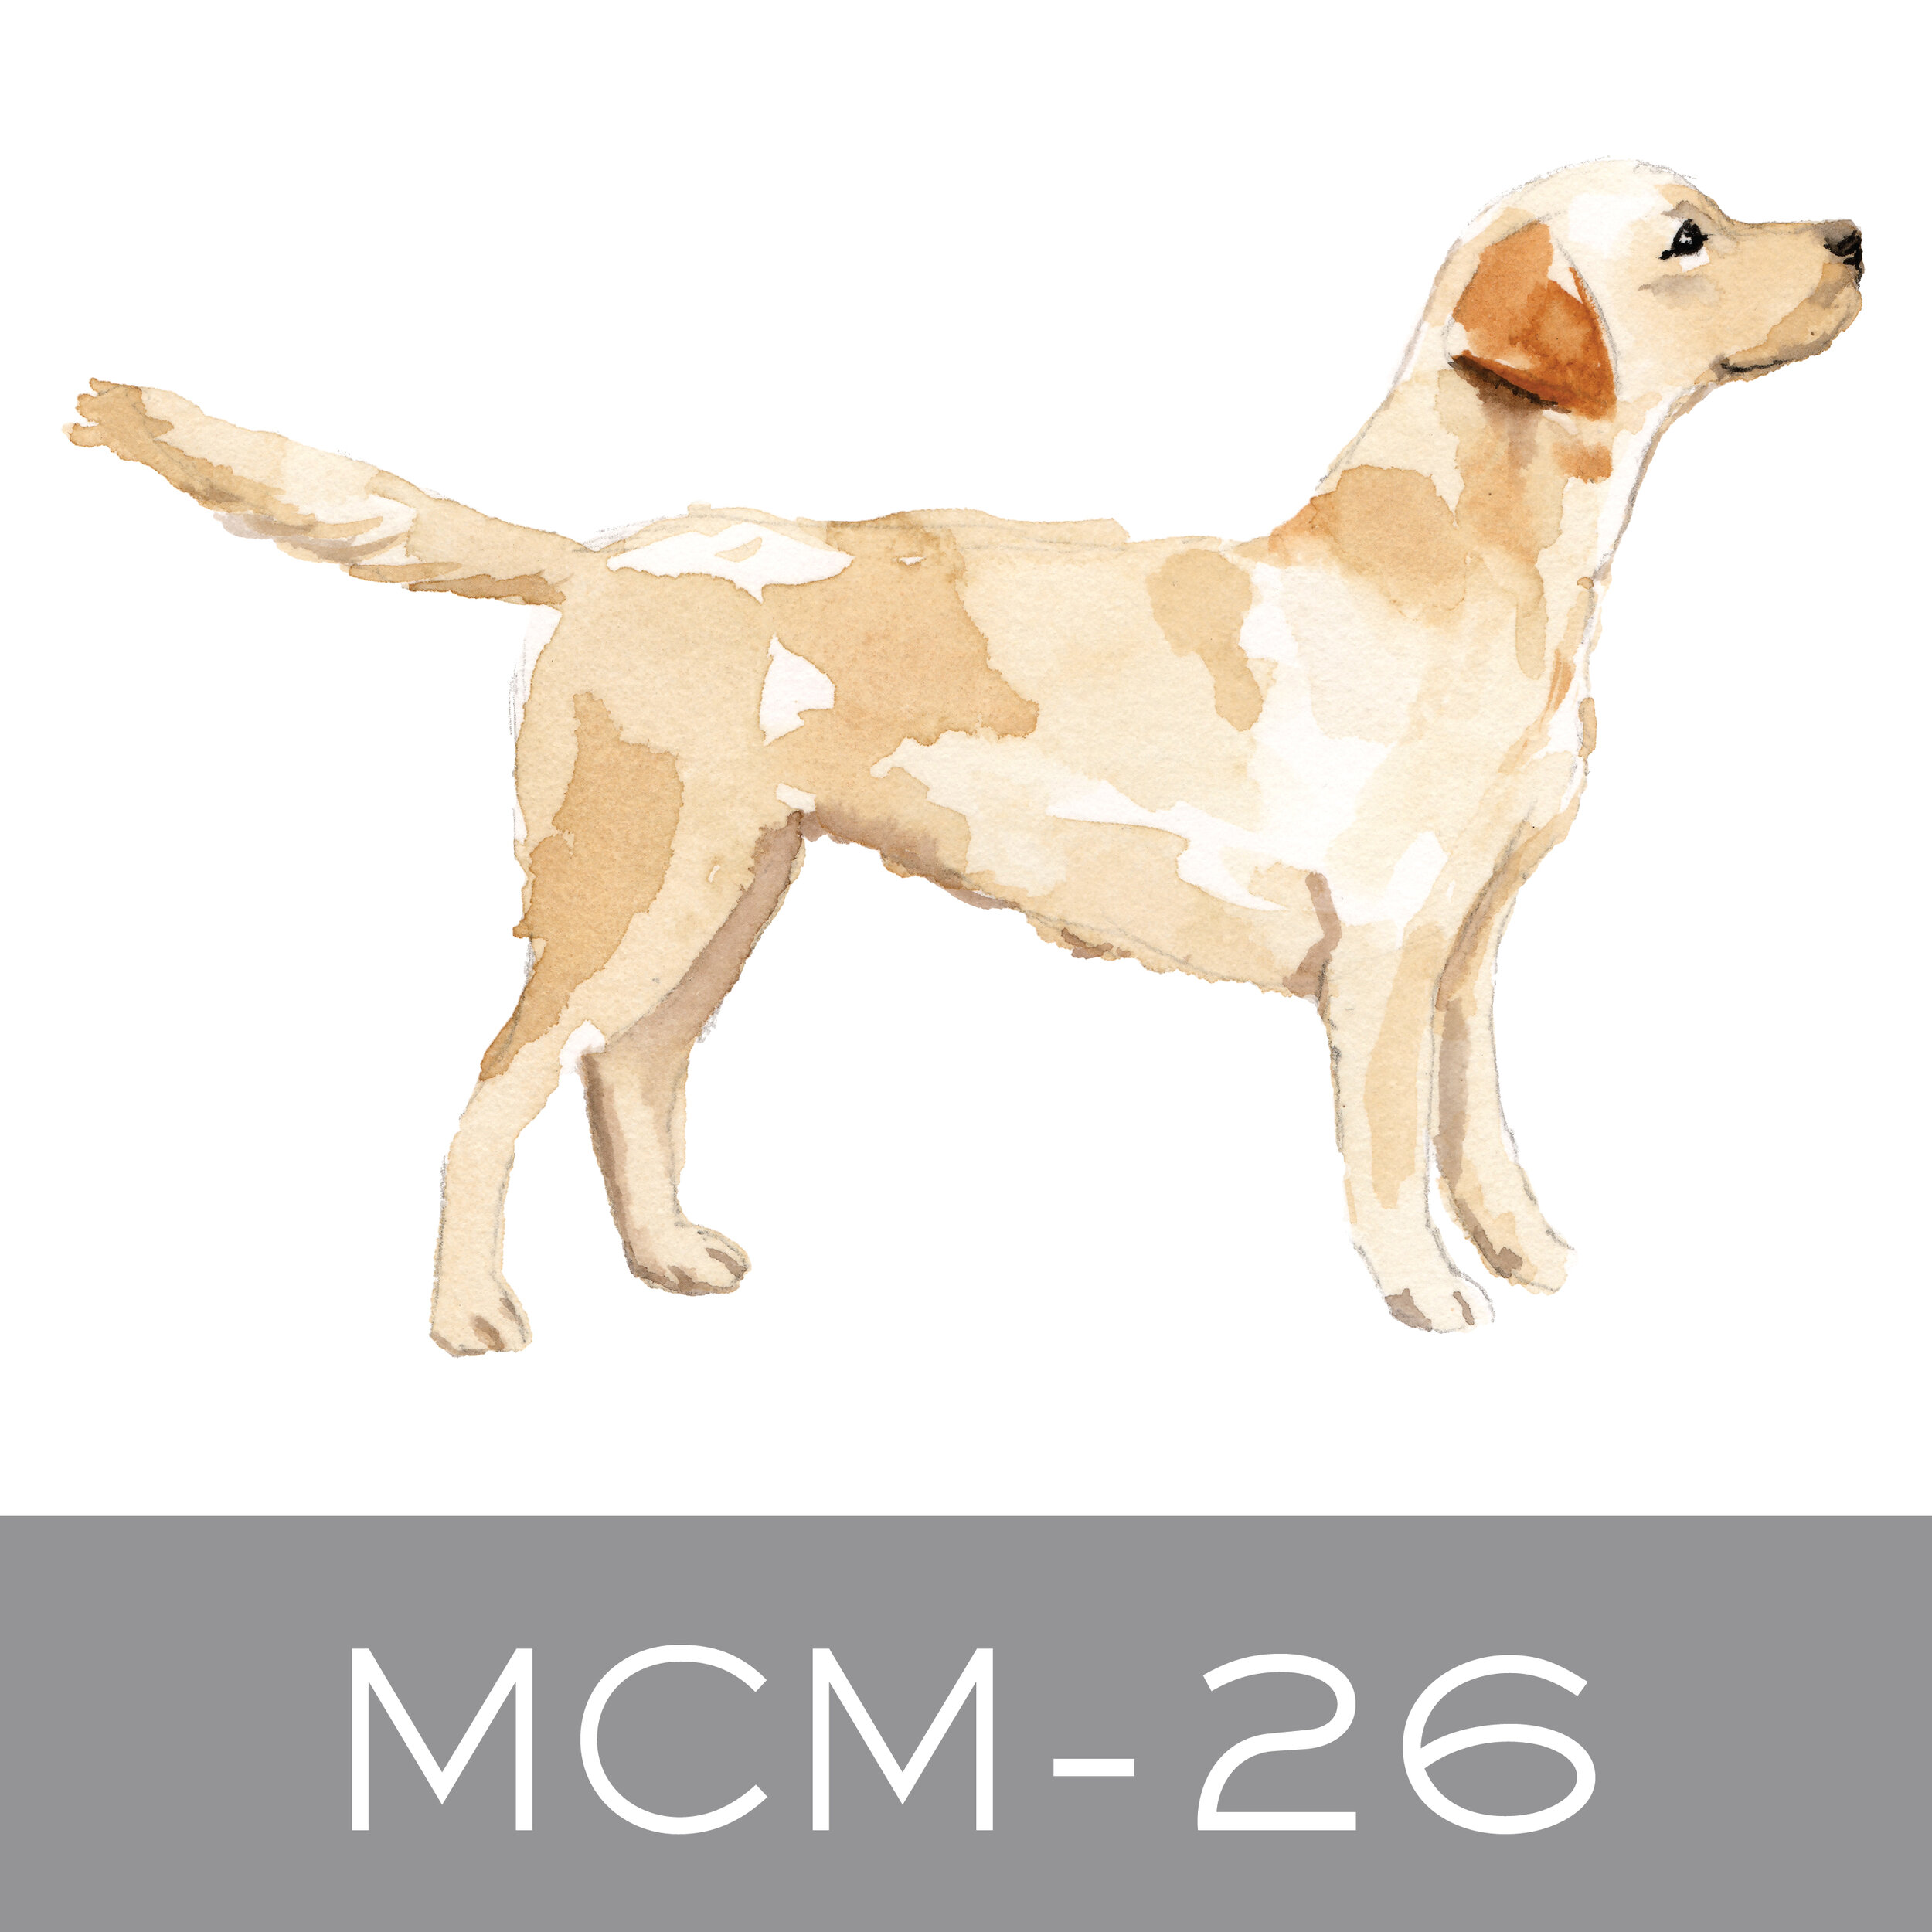 MCM-26.jpg